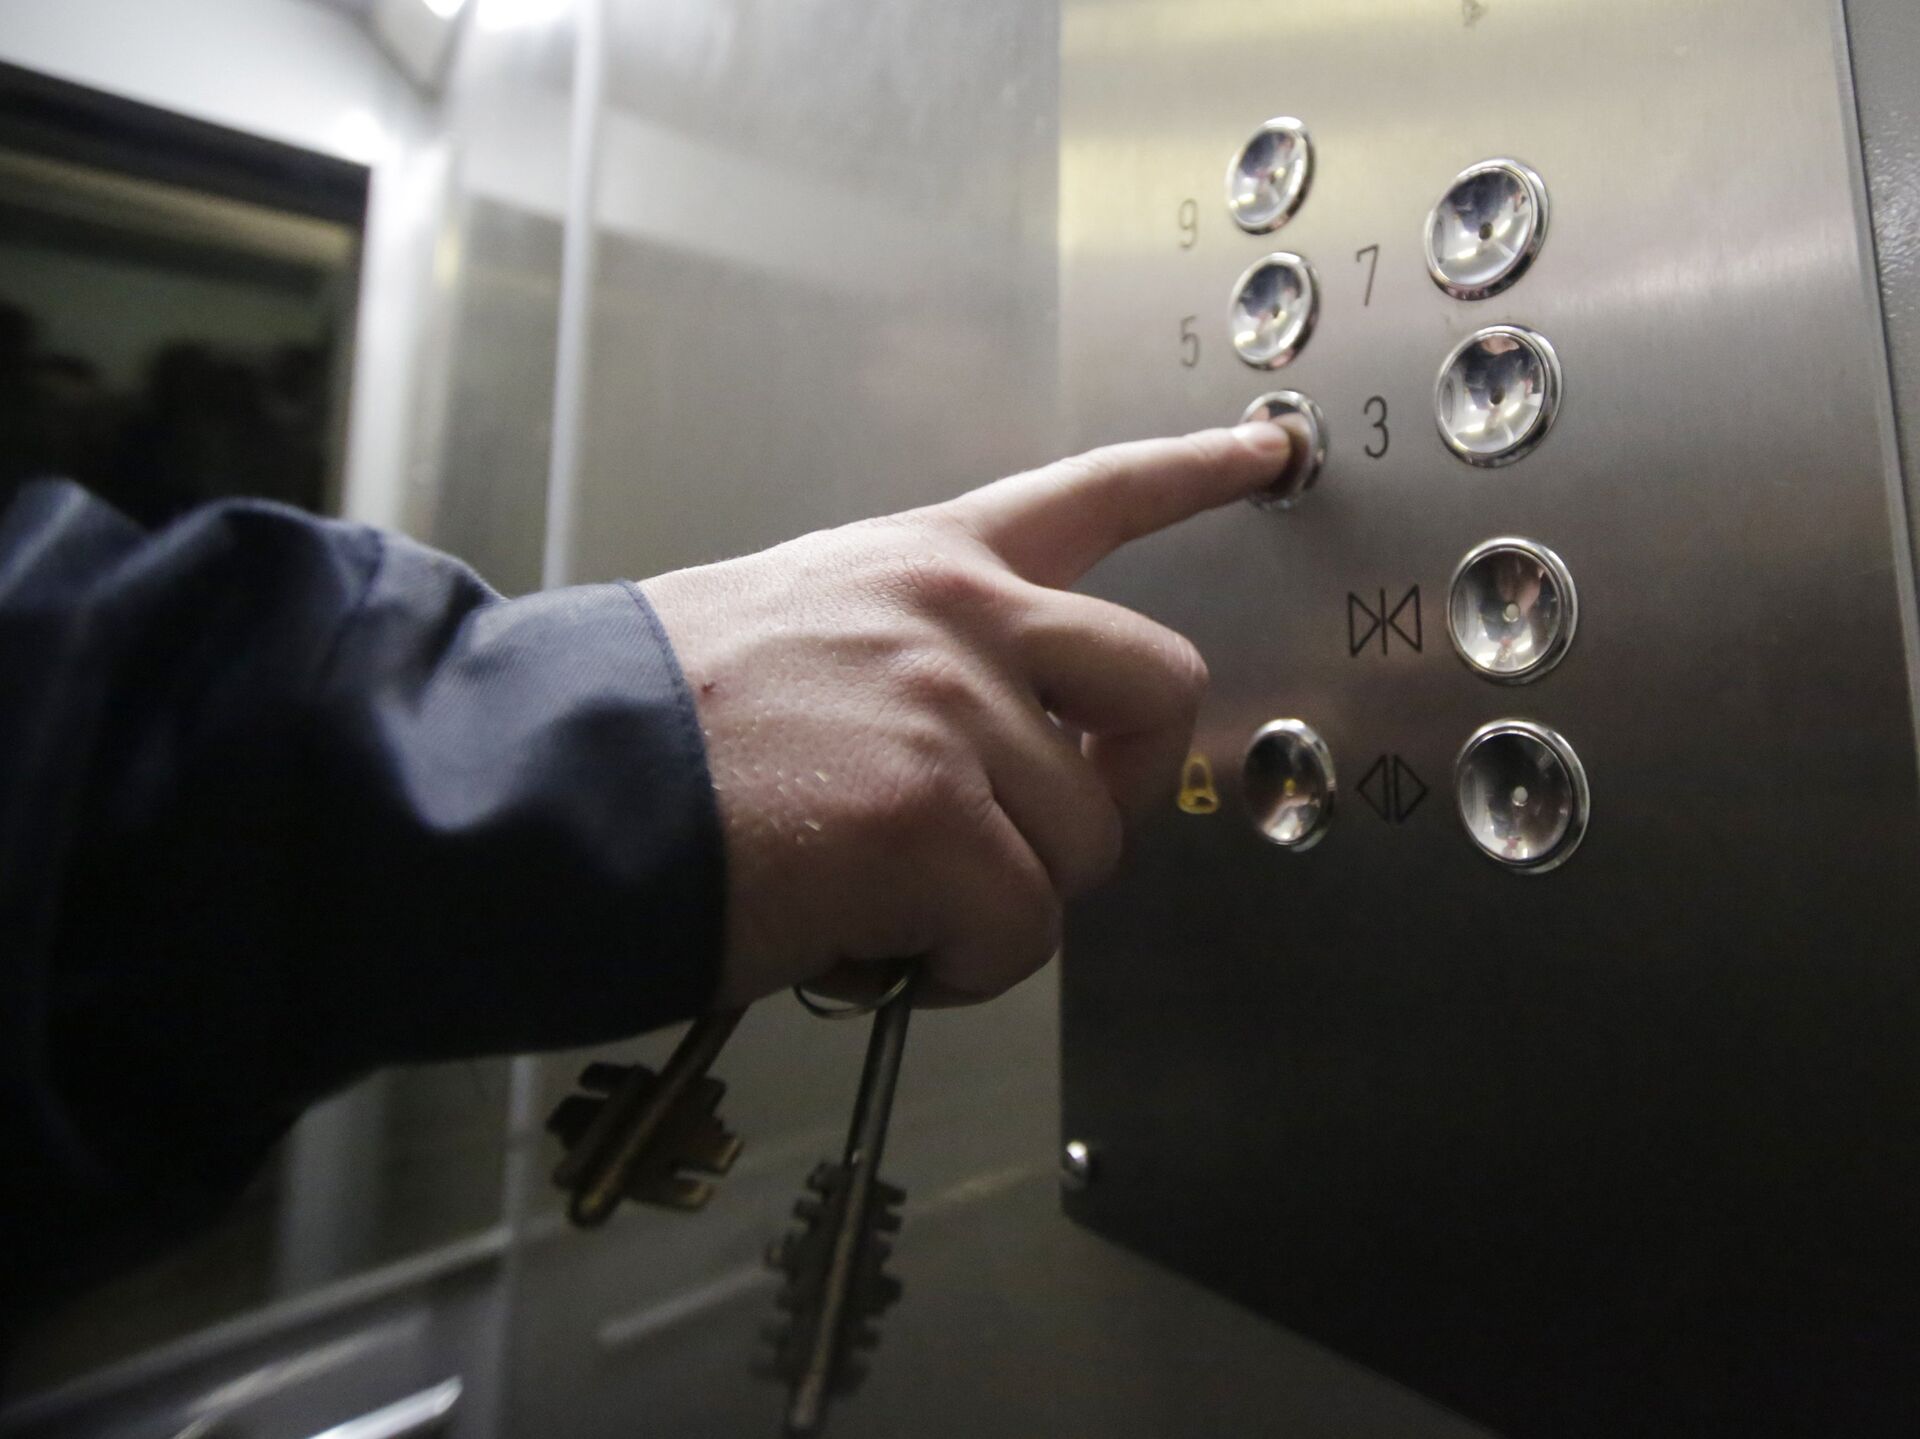 Астанада лифтіде дәрет сындырған тұрғын жазаланды 